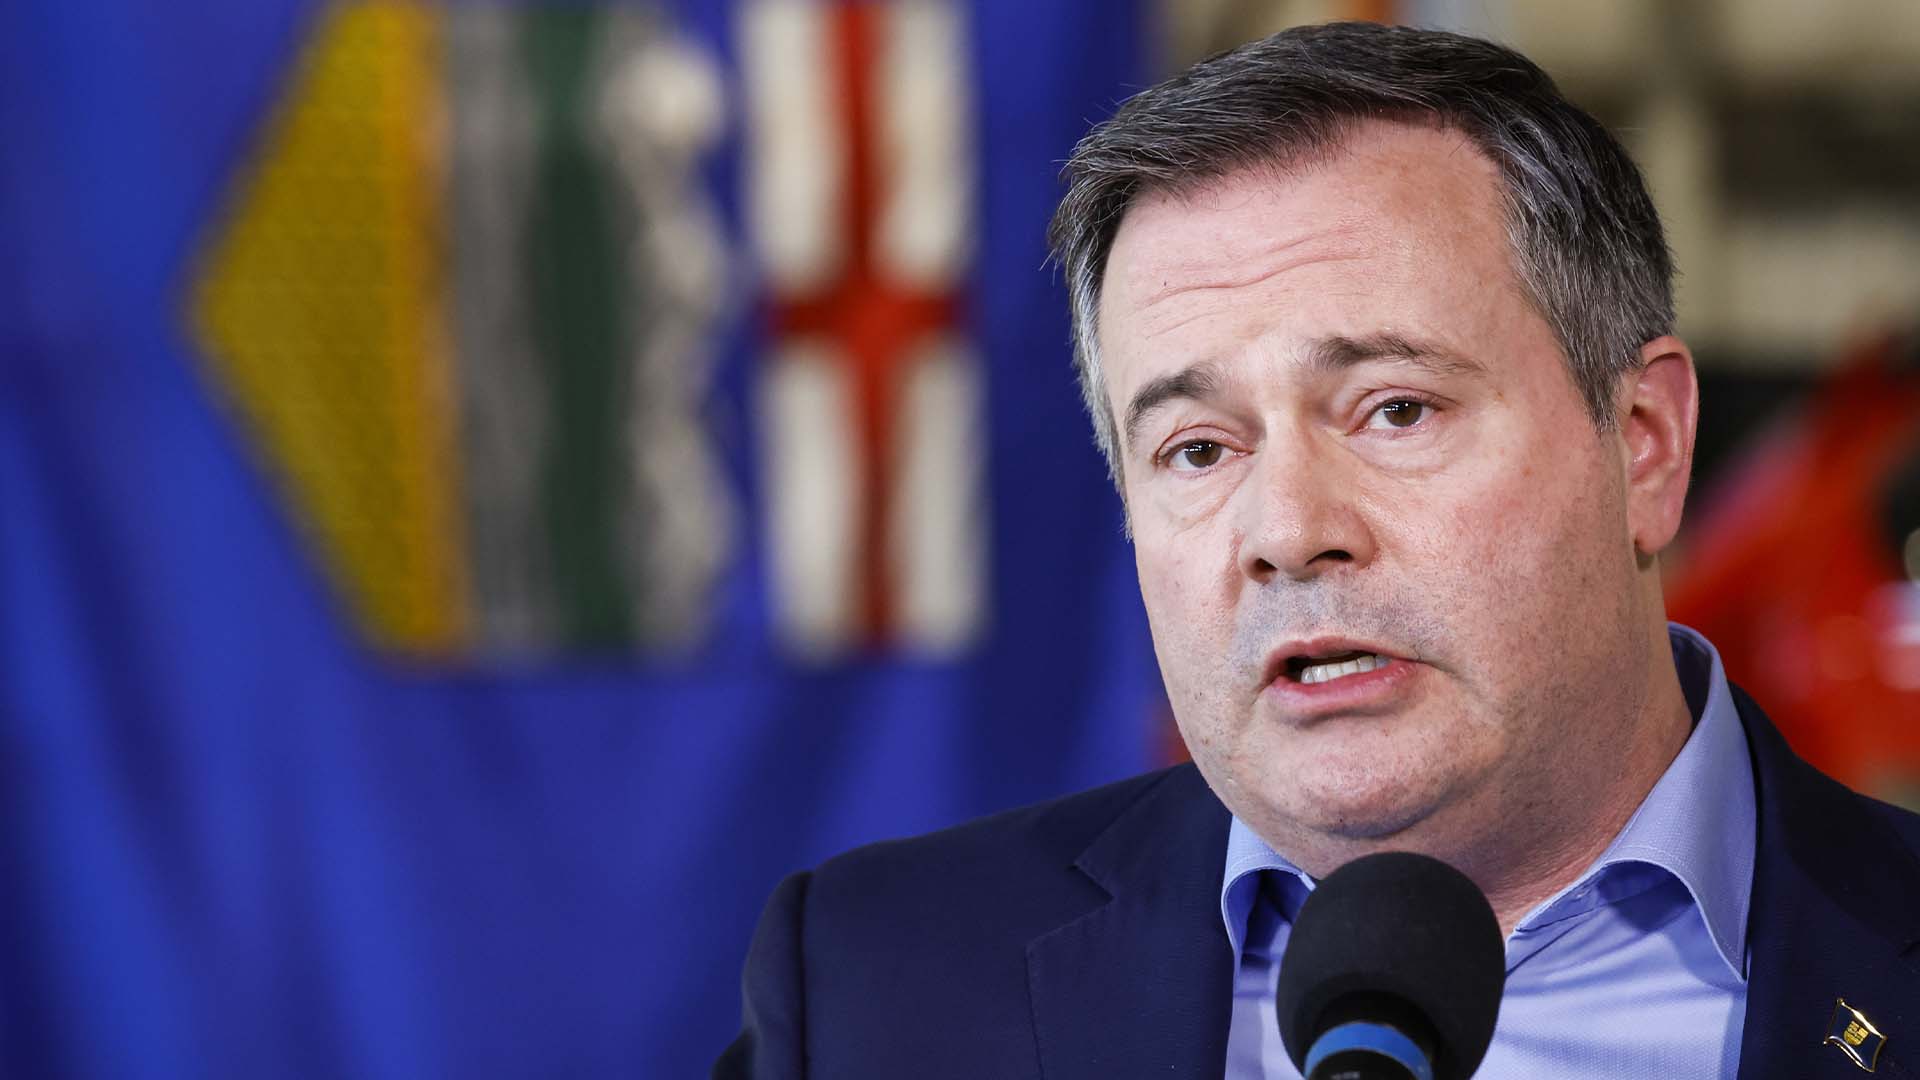 Le premier ministre de l'Alberta, Jason Kenney, a annoncé sa démission mercredi soir alors qu'il avait remporté un vote de confiance dans son parti de 51,4%.